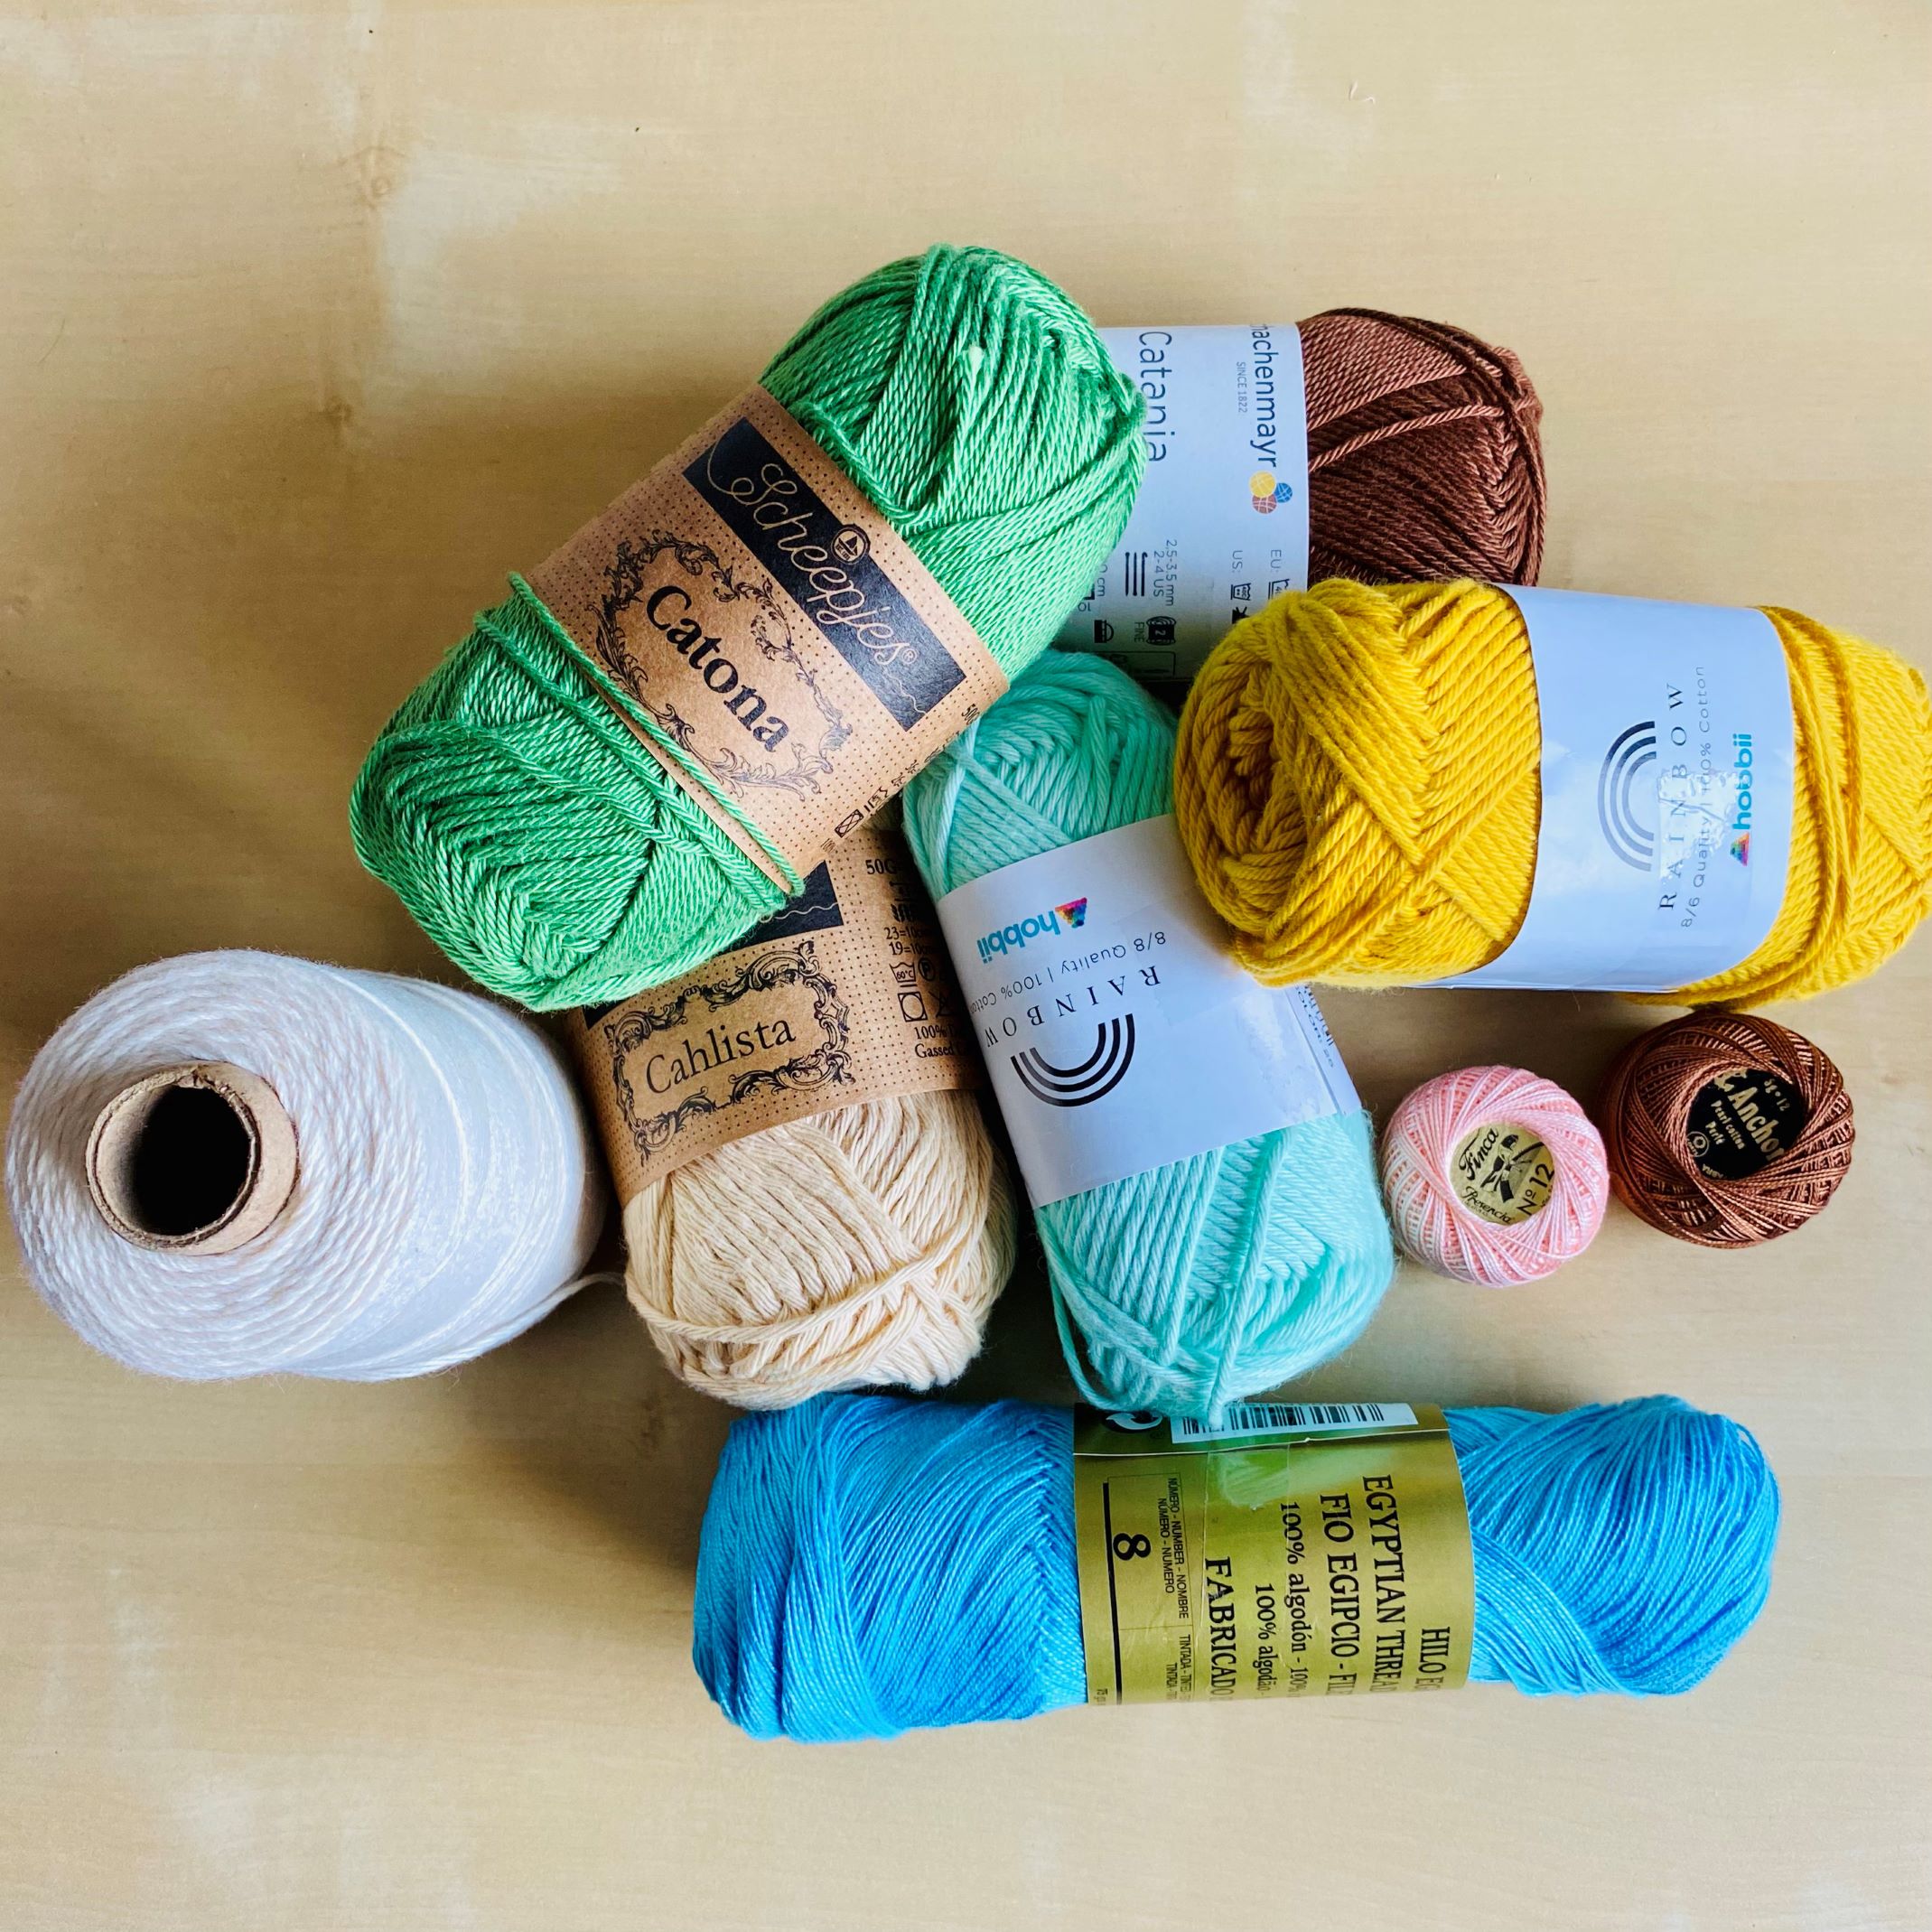 Tipos de hilo para crochet y amigurumi: ¿Hilo Mercerizado o No